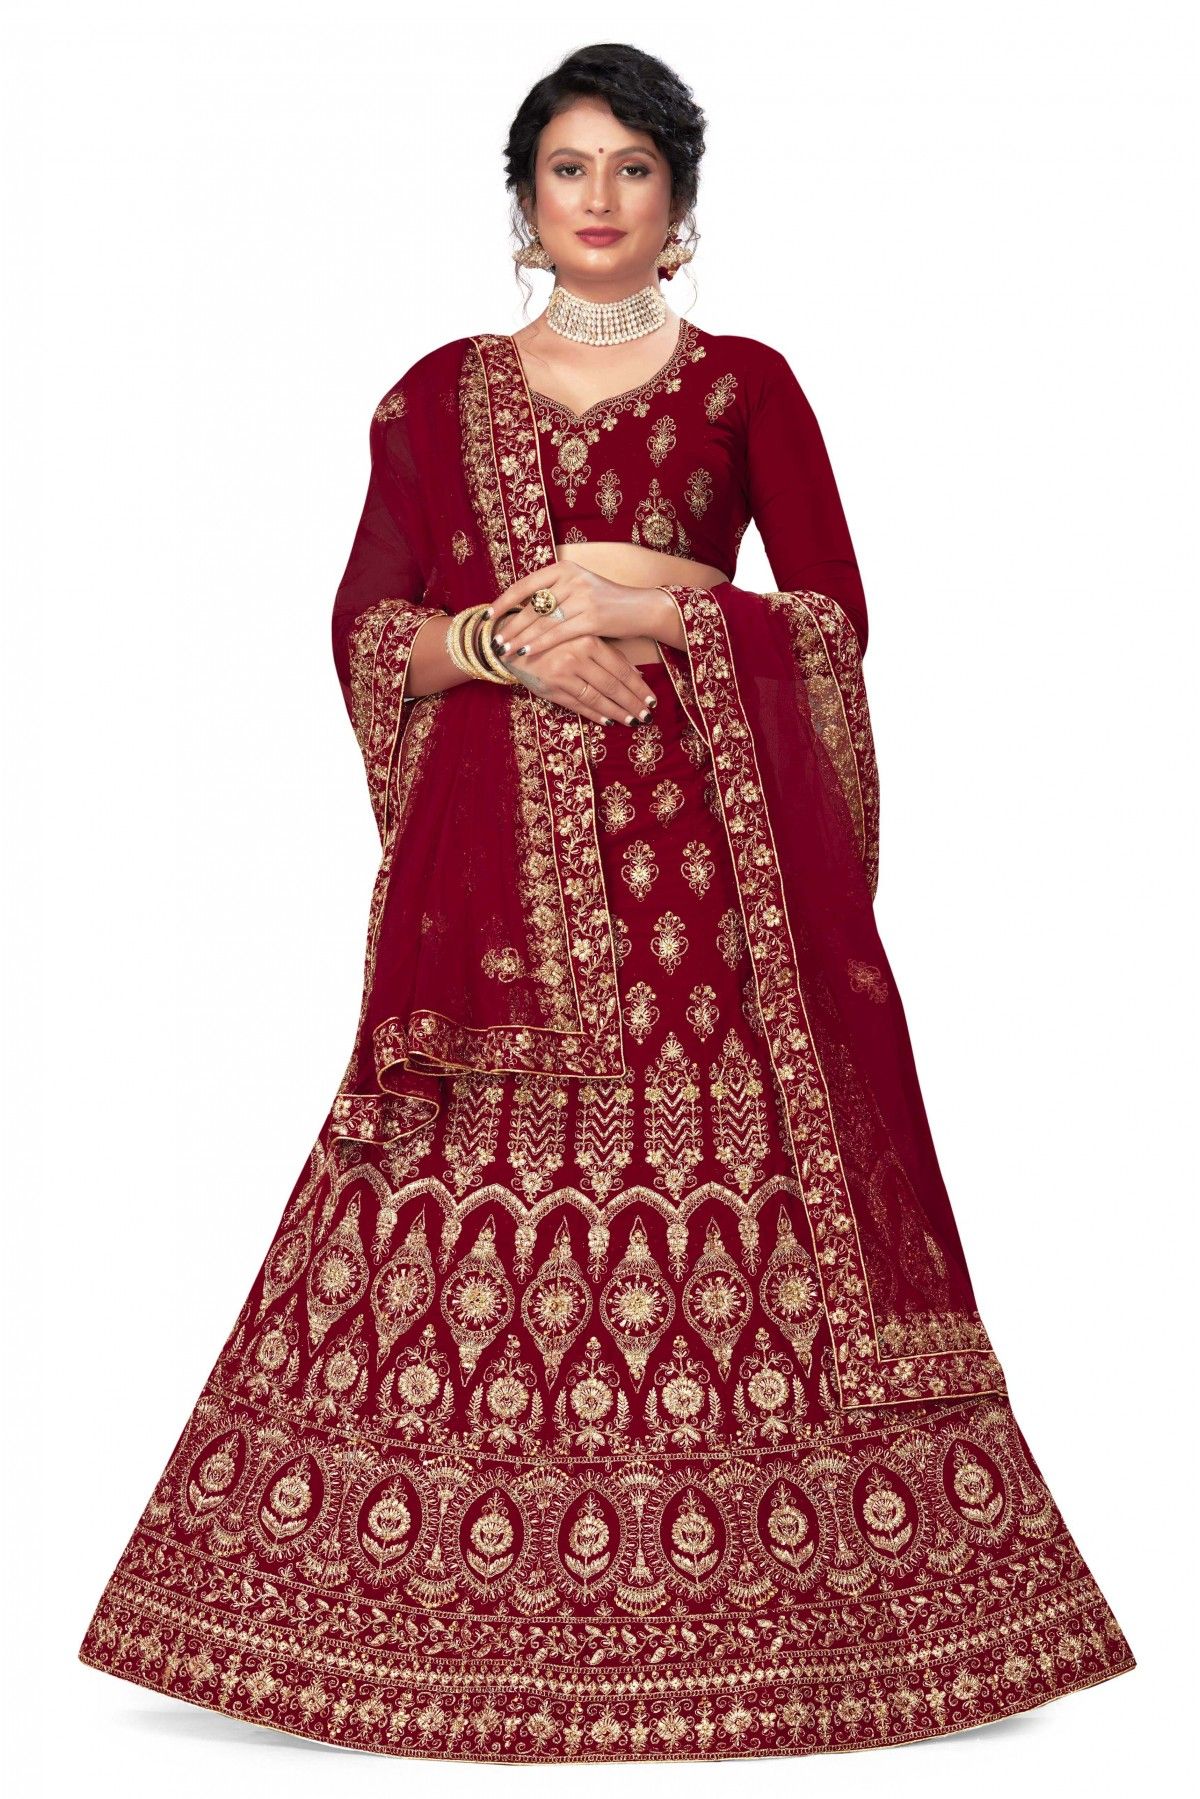 Velvet Embroidery Lehenga Choli In Maroon Colour - LD3233948